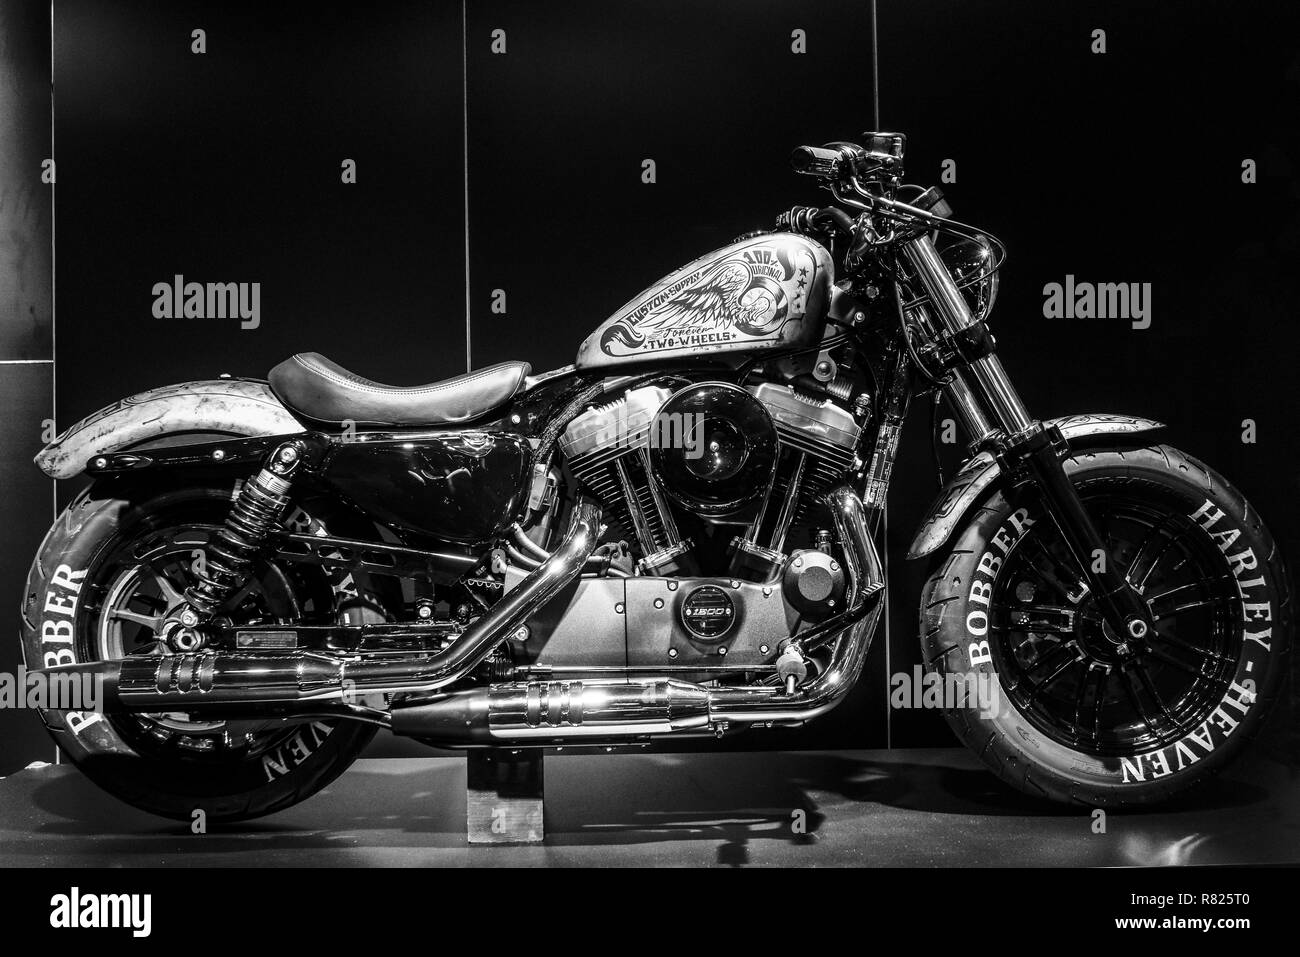 Custom Harley Davidson, 1200 ccm, Motor Show, Zürich, Schweiz  Stockfotografie - Alamy